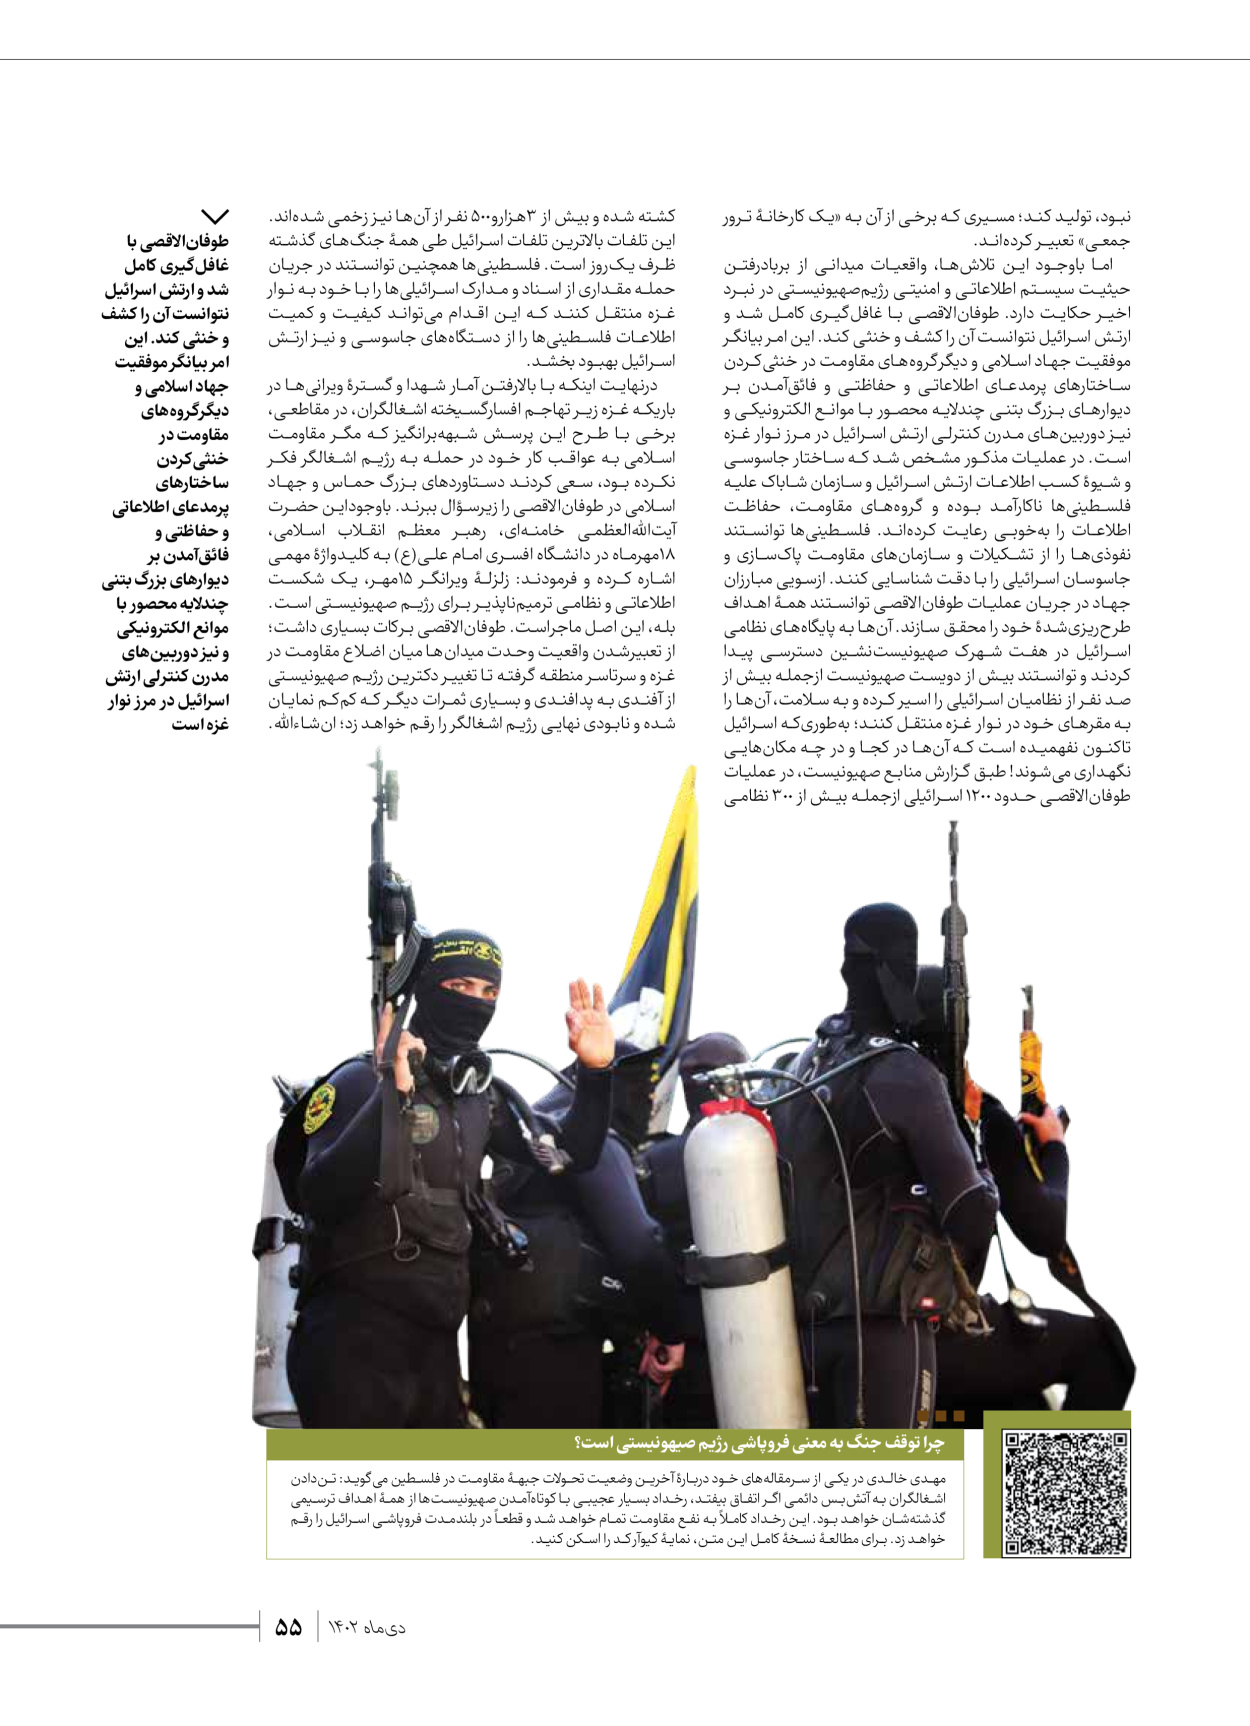 روزنامه ایران - ویژه نامه شهدای قدس ۲ - ۲۳ دی ۱۴۰۲ - صفحه ۵۵